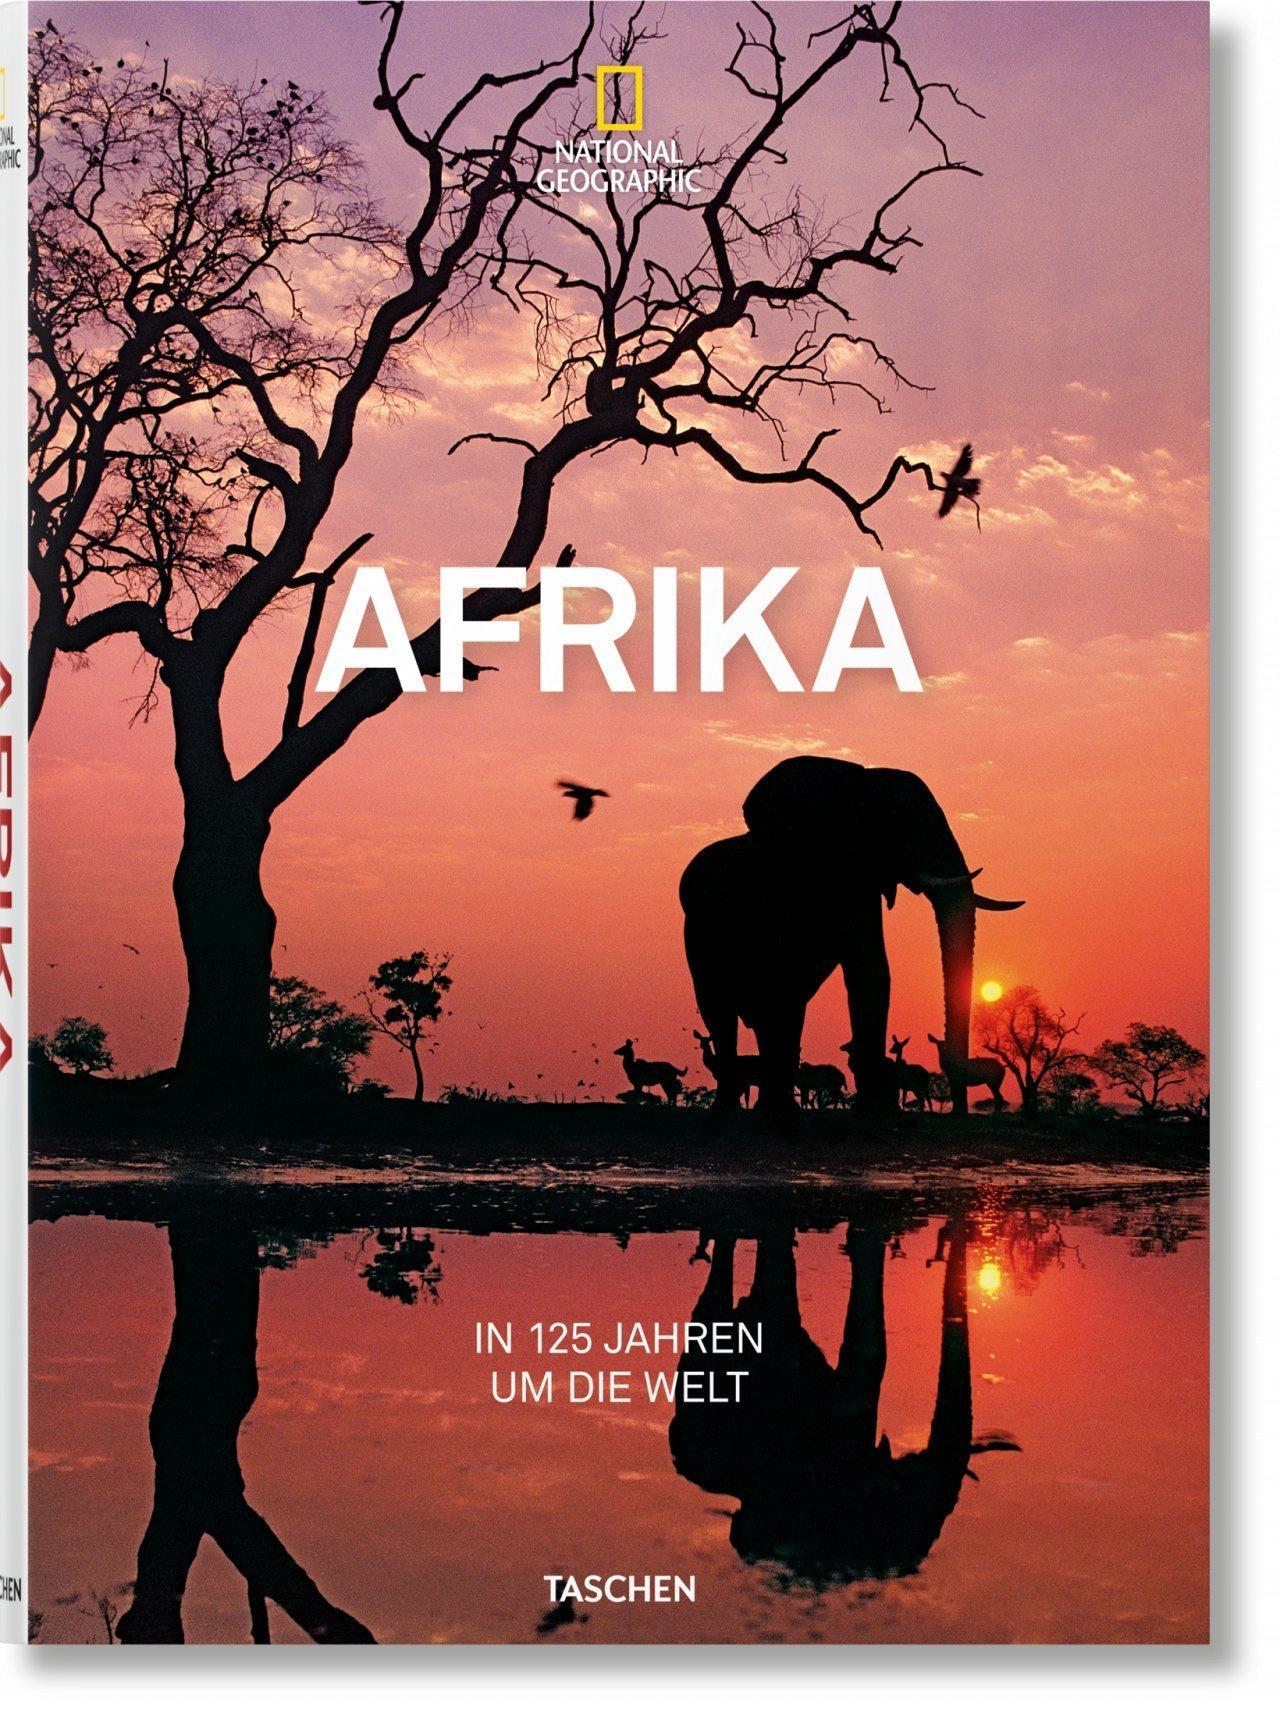 National Geographic In 125 Jahren um die Welt Afrika